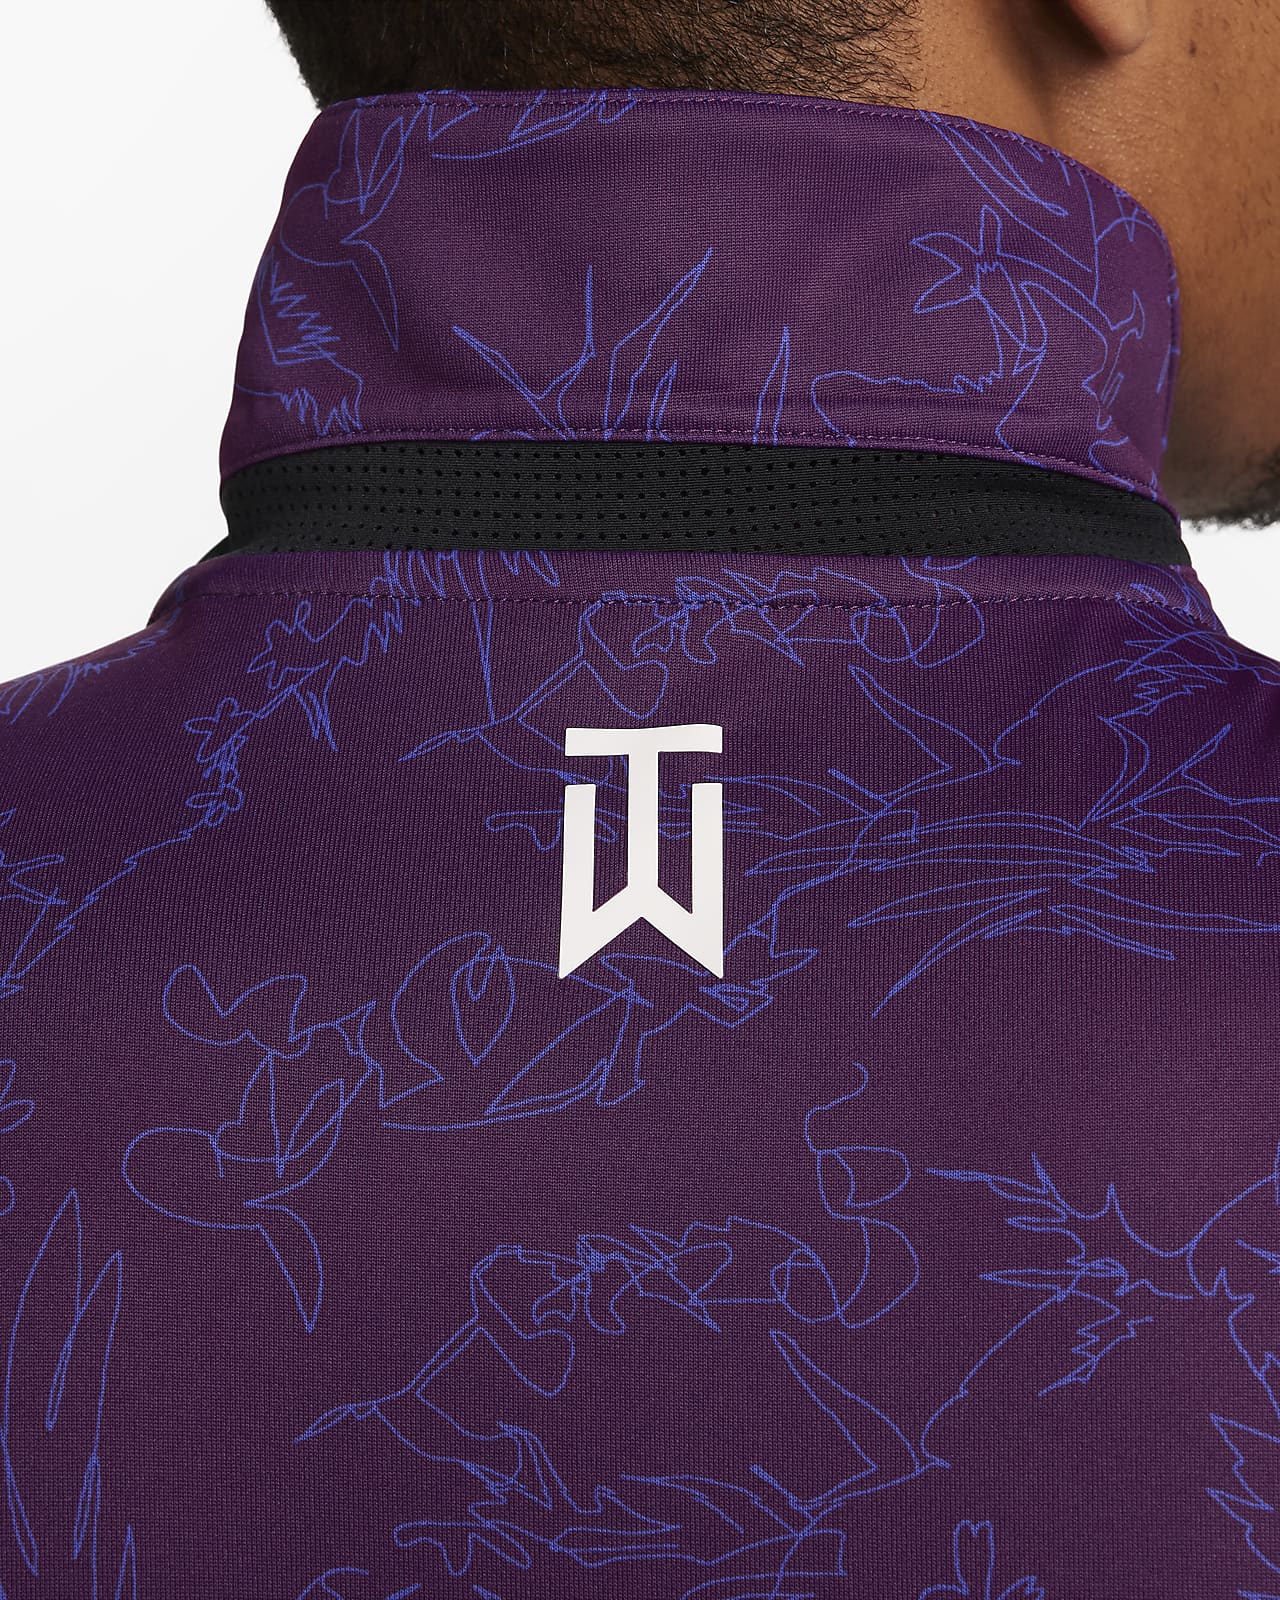 Louis Vuitton Tiger Baseball Jersey Clothes Sport For Men Women